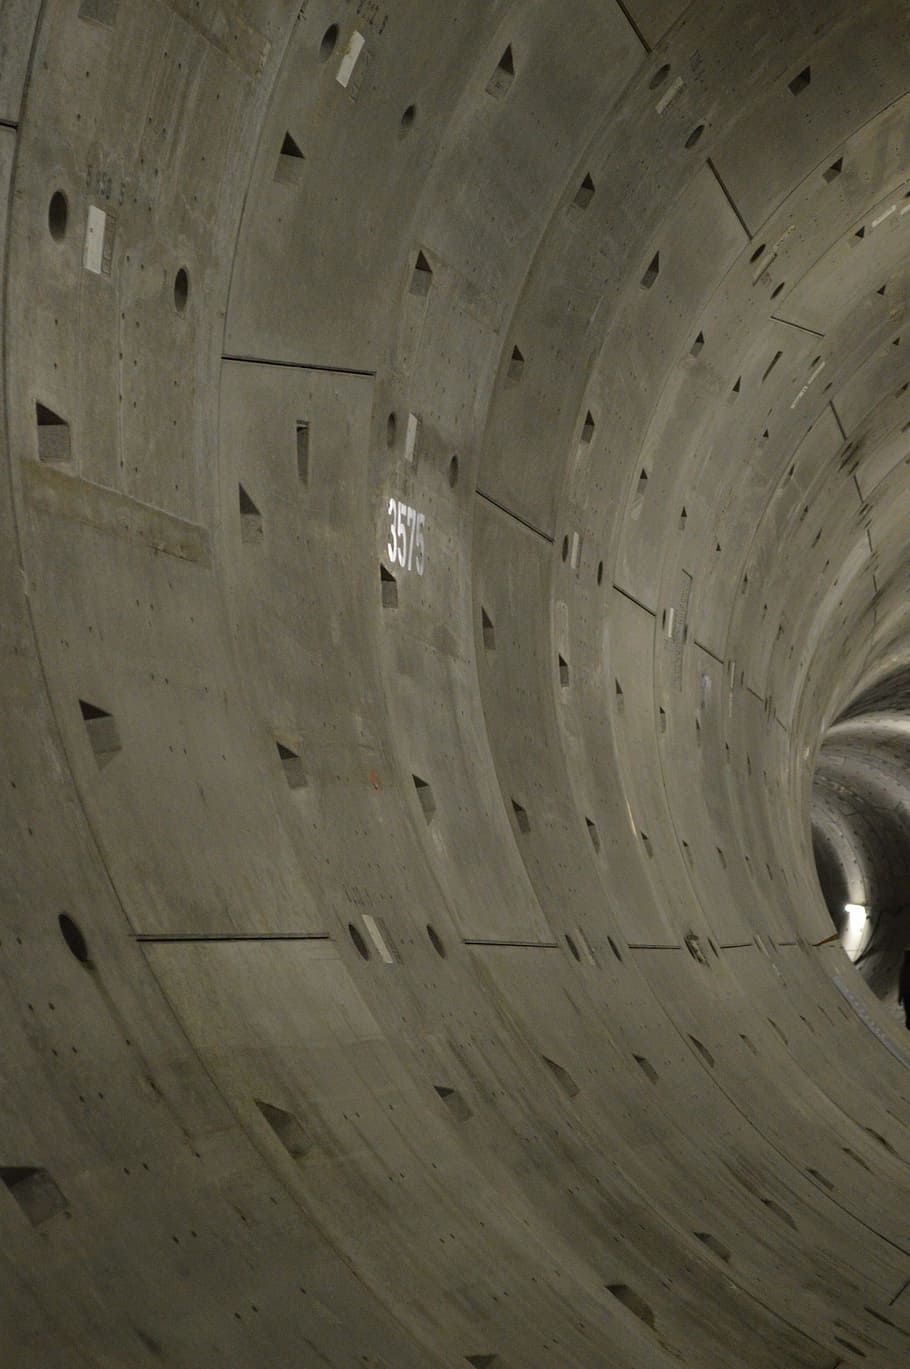 túnel, hormigón, profundidad, profundo, gris, oscuro, losas de hormigón, construcción, norte de zuislijn, amsterdam